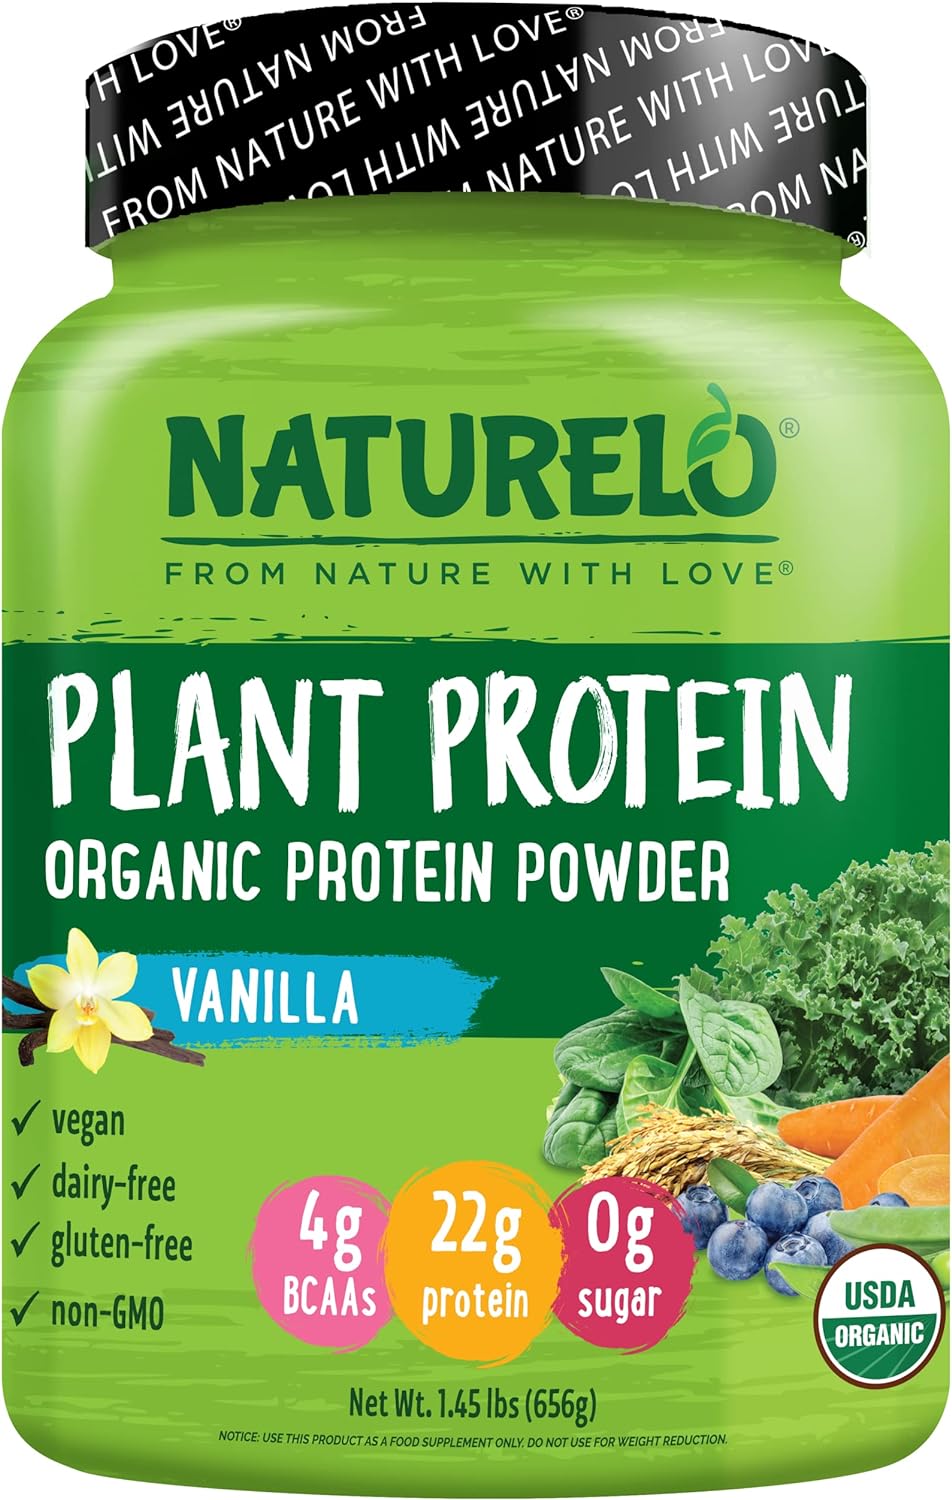 NATURELO Plant Protein Powder, Vanilla, 22g Protein - Non-GMO, Vegan,